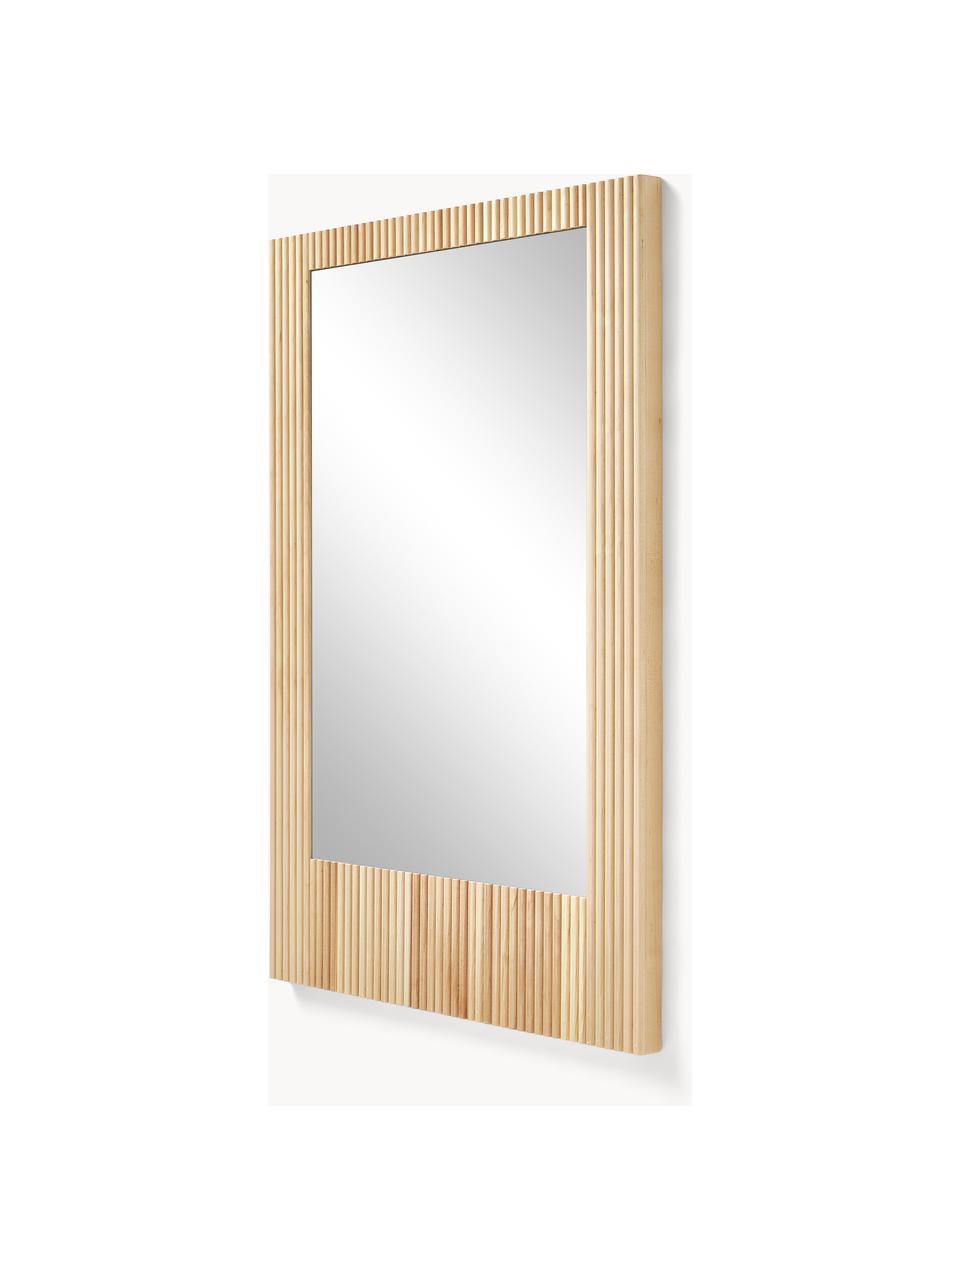 Wandspiegel Nele mit geriffelter Birkenholz-Umrandung, Rahmen: Birkenholz, Rückseite: Mitteldichte Holzfaserpla, Spiegelfläche: Spiegelglas, Birkenholz, B 70 x H 100 cm